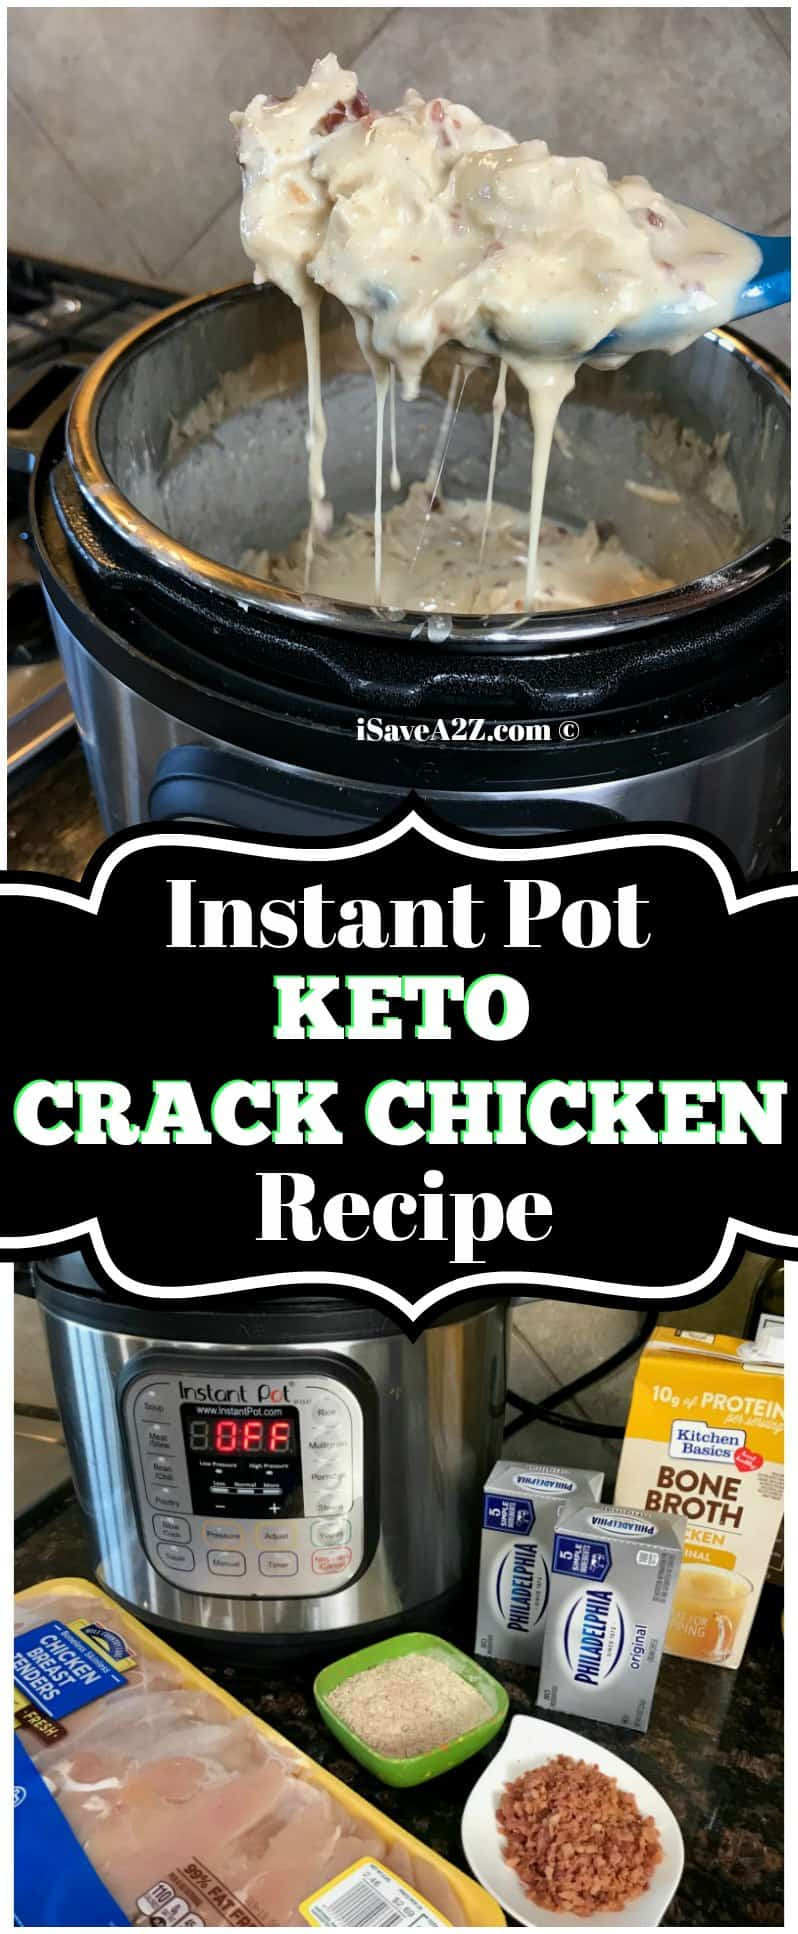 Instant Pot Keto Chicken
 Instant Pot Keto Crack Chicken Recipe iSaveA2Z